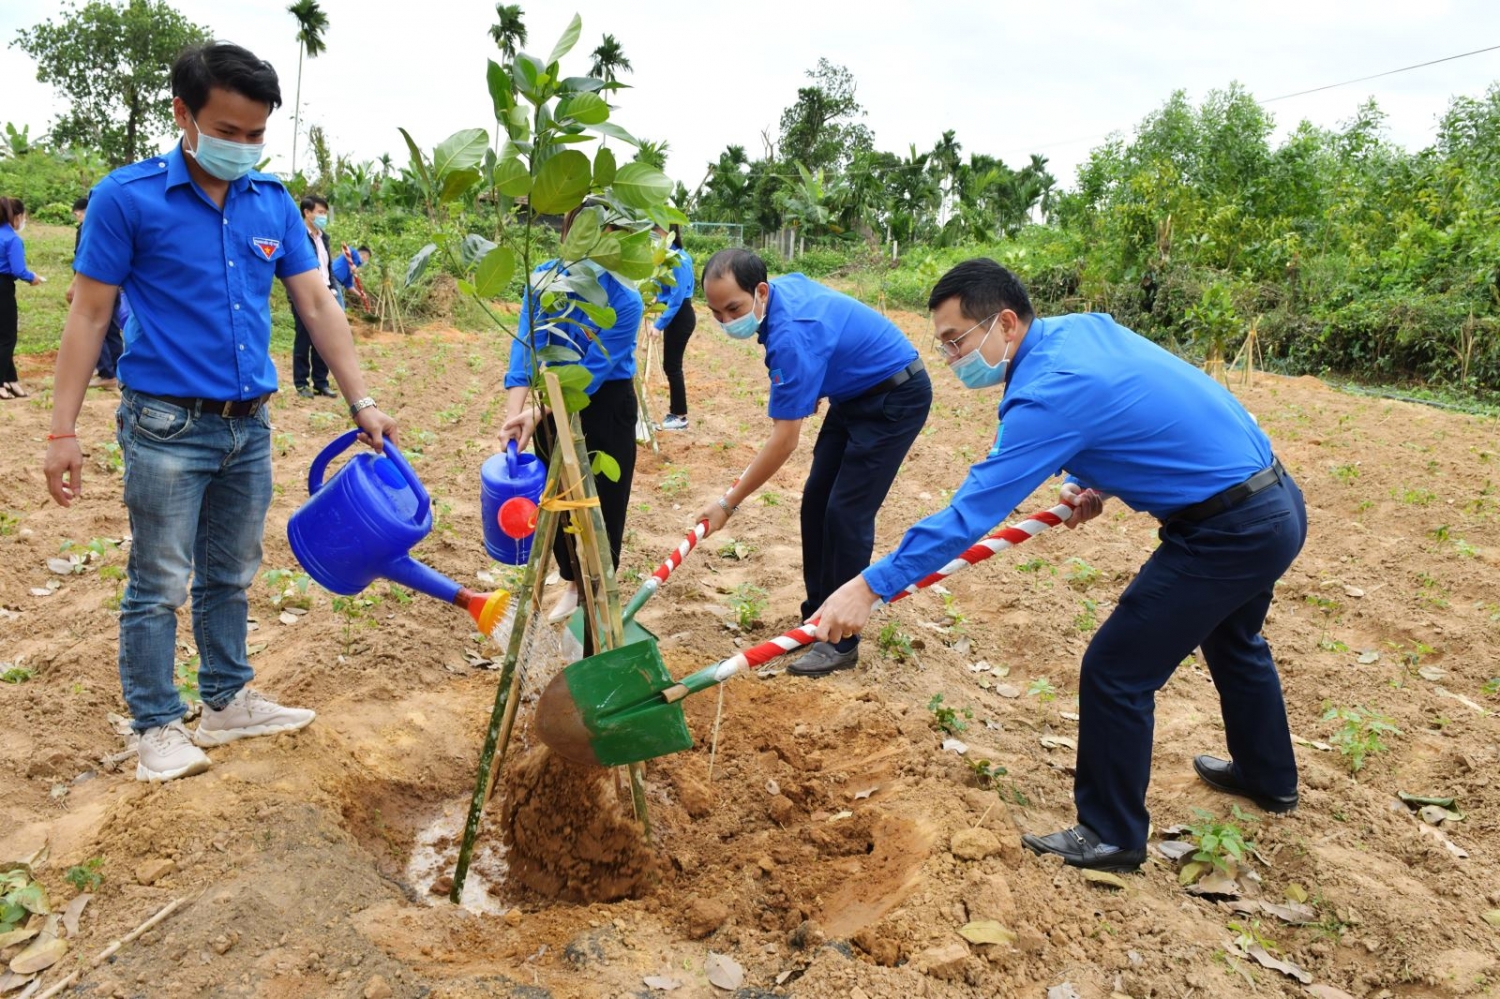 BSR ra quân trồng cây tại các điểm di tích lịch sử văn hóa tỉnh Quảng Ngãi